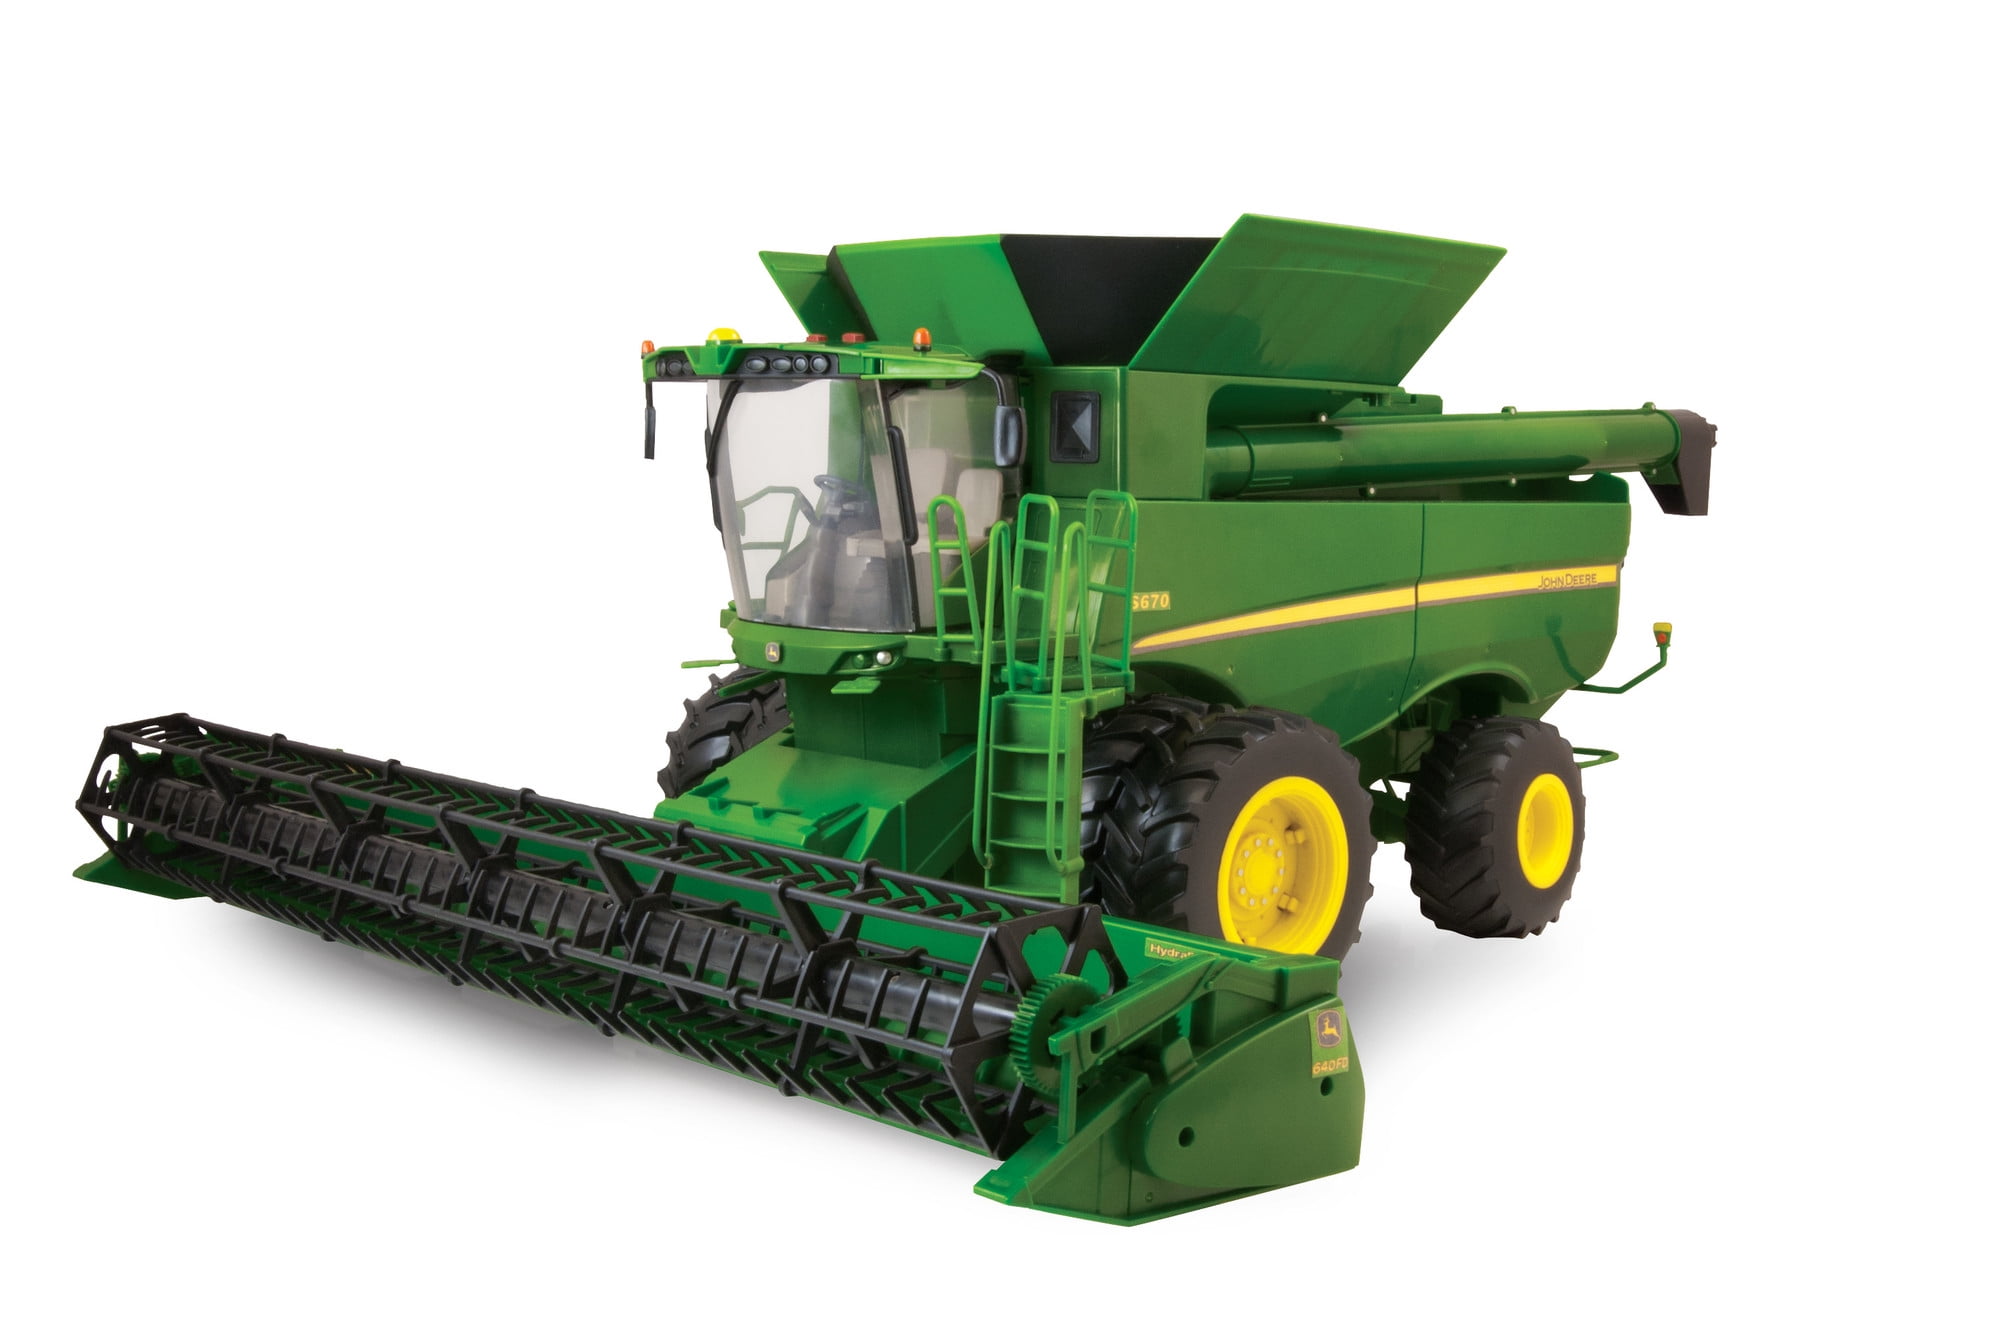 68212 Combine w/Head,Tractor w/Grain Cart 1/32 NEW John Deere Harvesting Set 